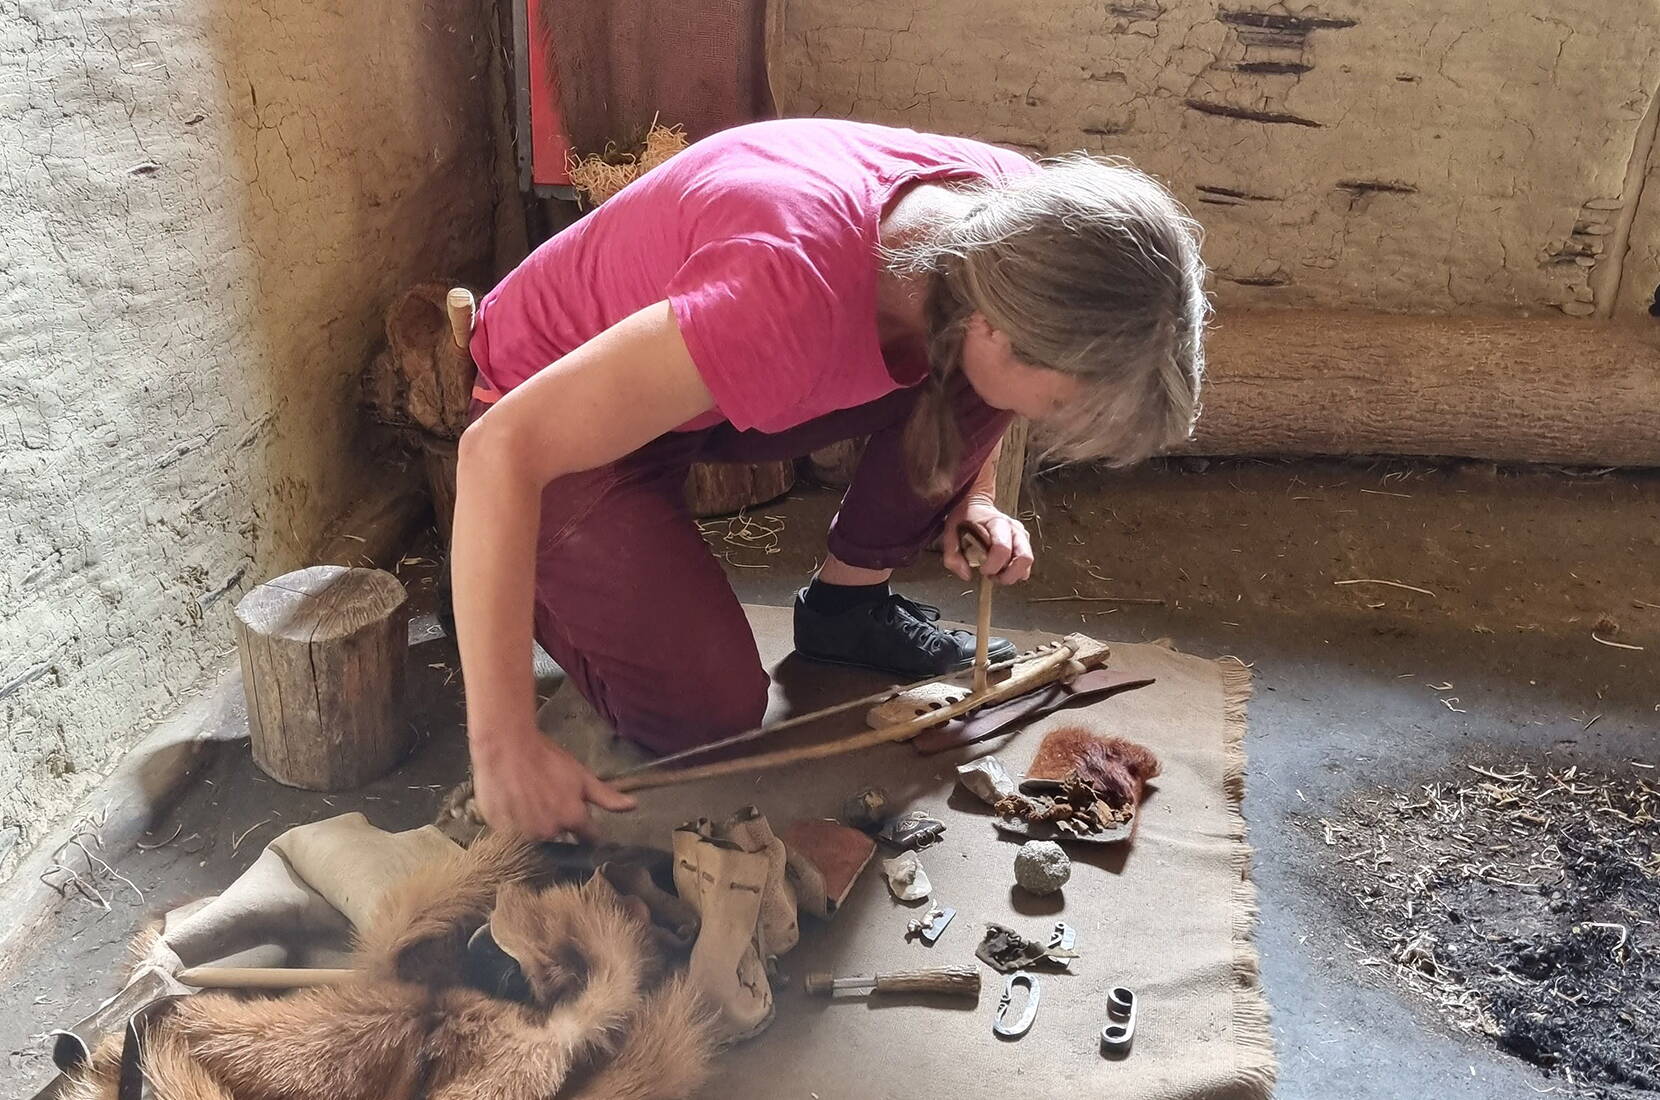 Das Pfahlbaudorf stellt eine typische, jungsteinzeitliche Siedlung der Schweiz dar. In den verschiedenen Workshops kannst du die vorgeschichtlichen Handwerkstechniken in einer authentischen Umgebung mit allen Sinnen entdecken und erforschen. 